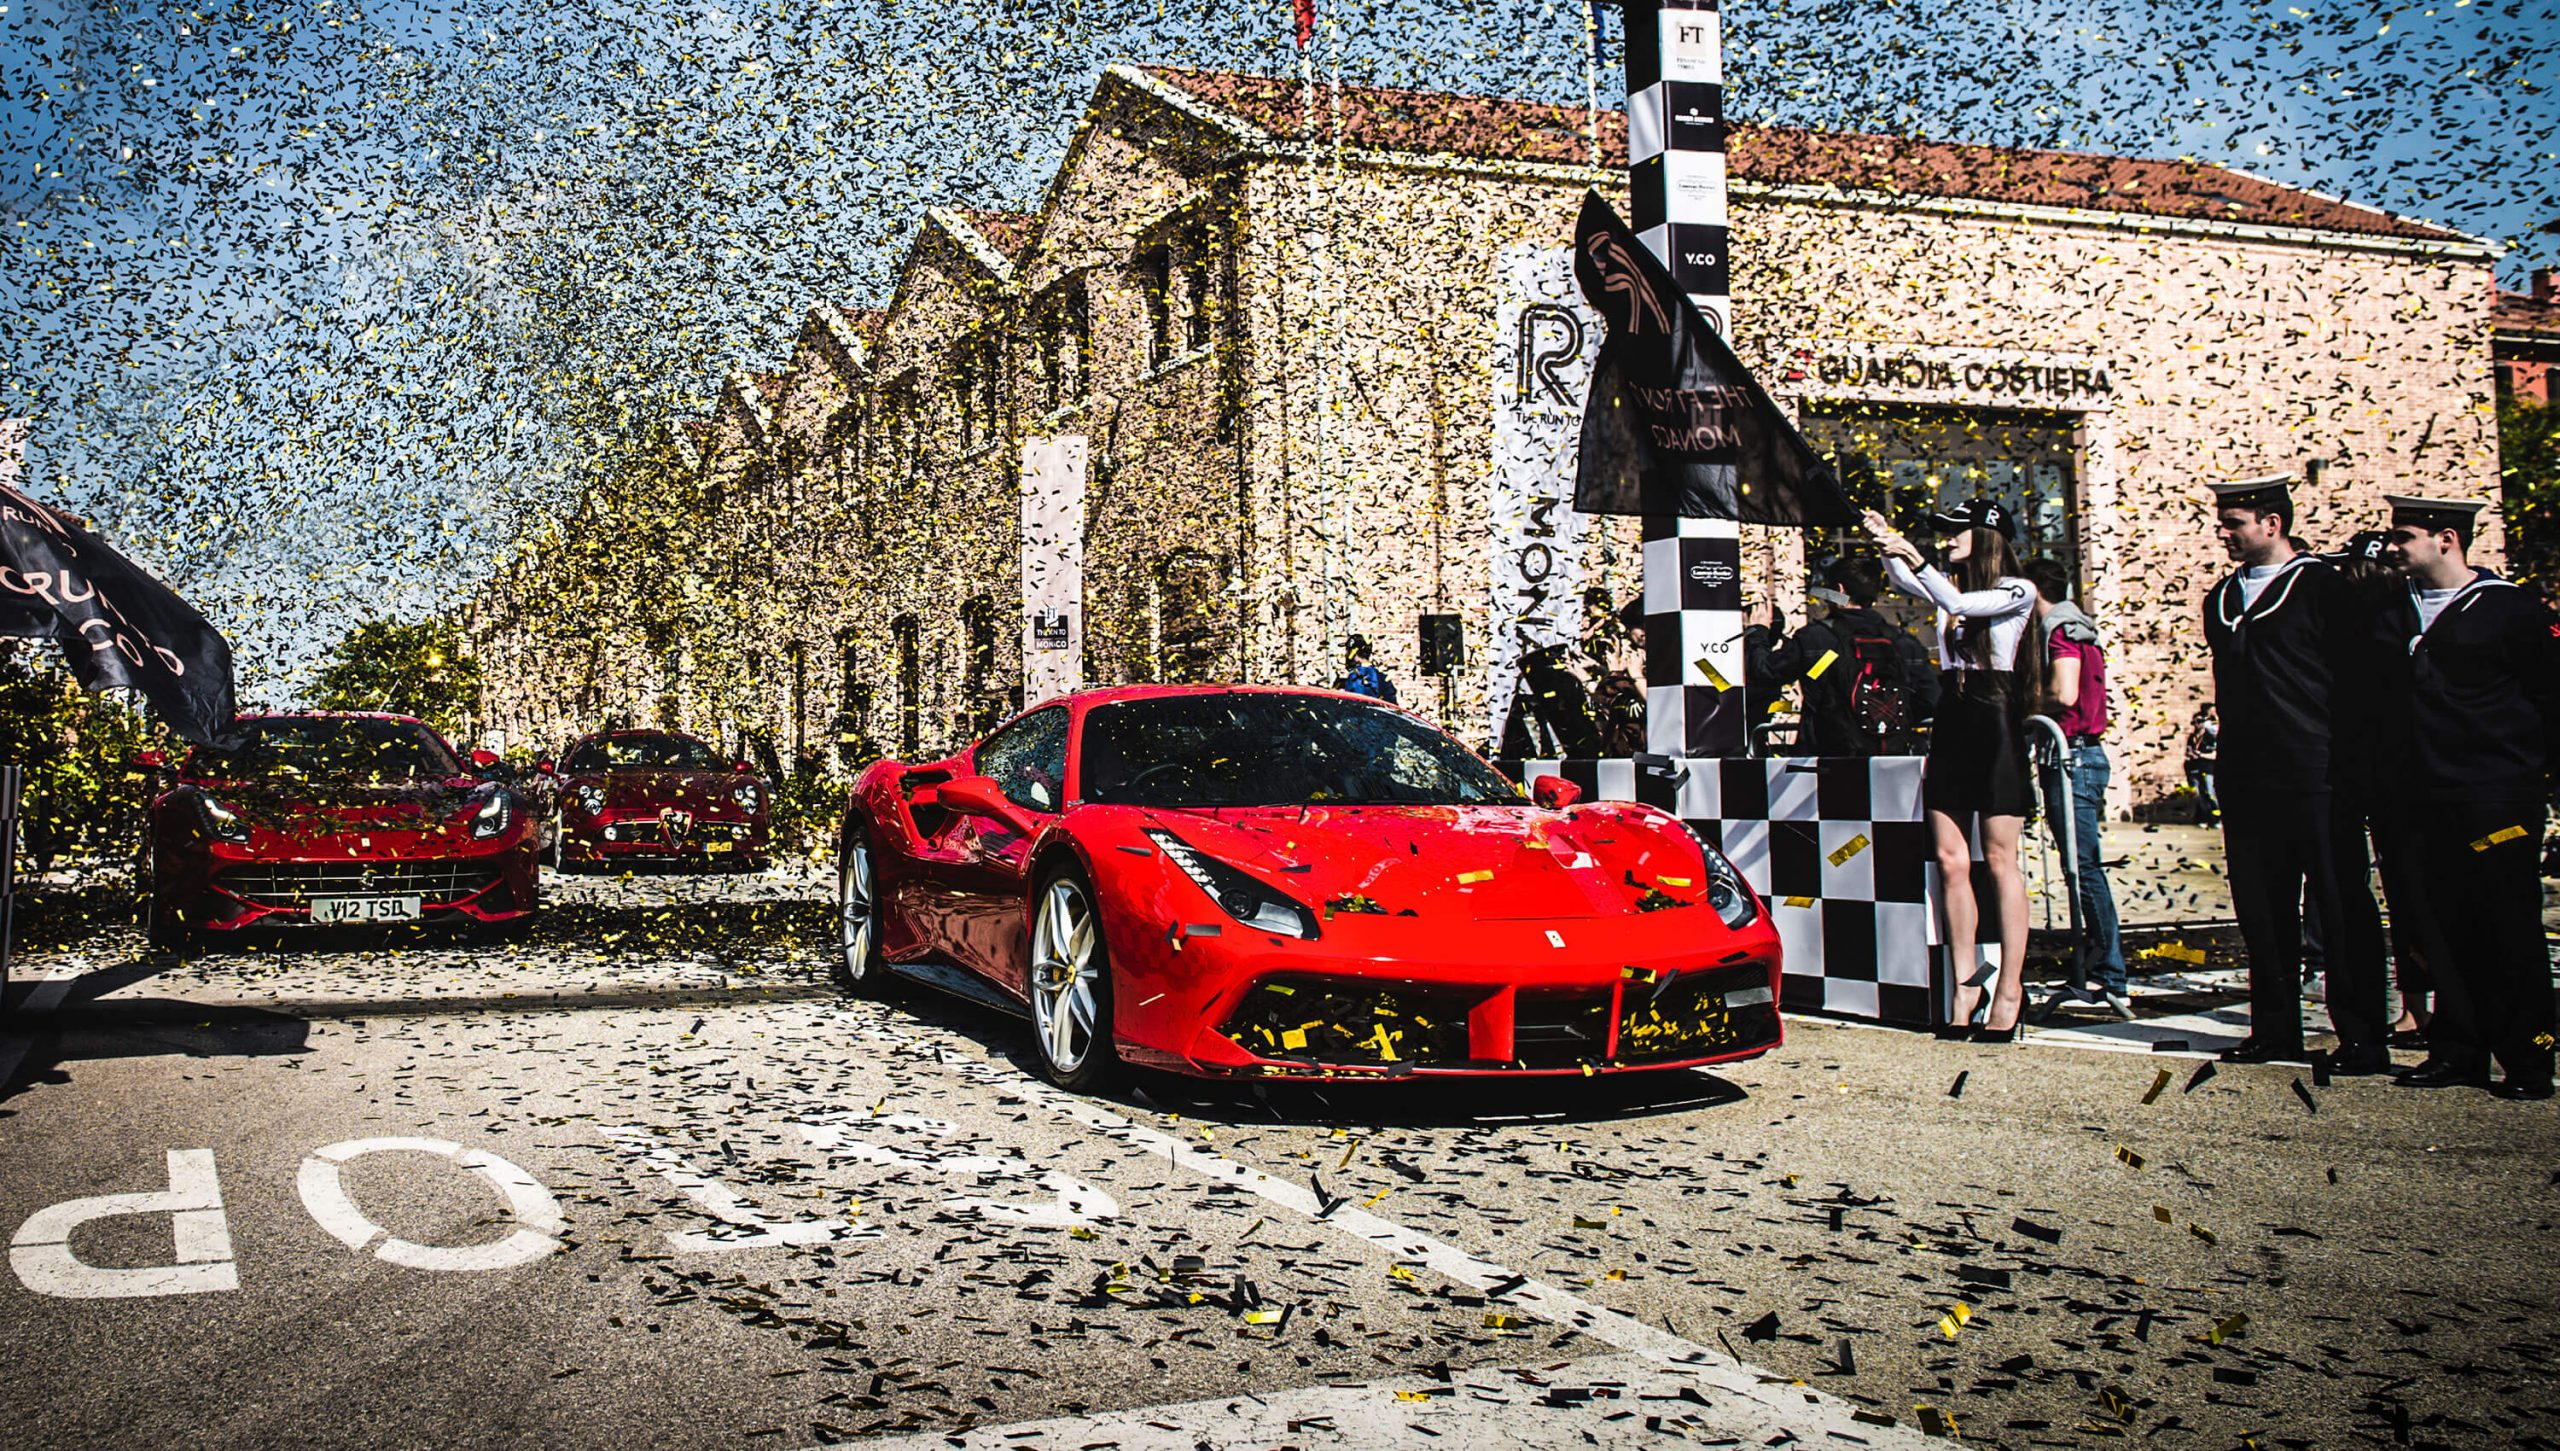 Red Ferrari on the start line of the Run to Monaco 2016 in Venice covered in confetti